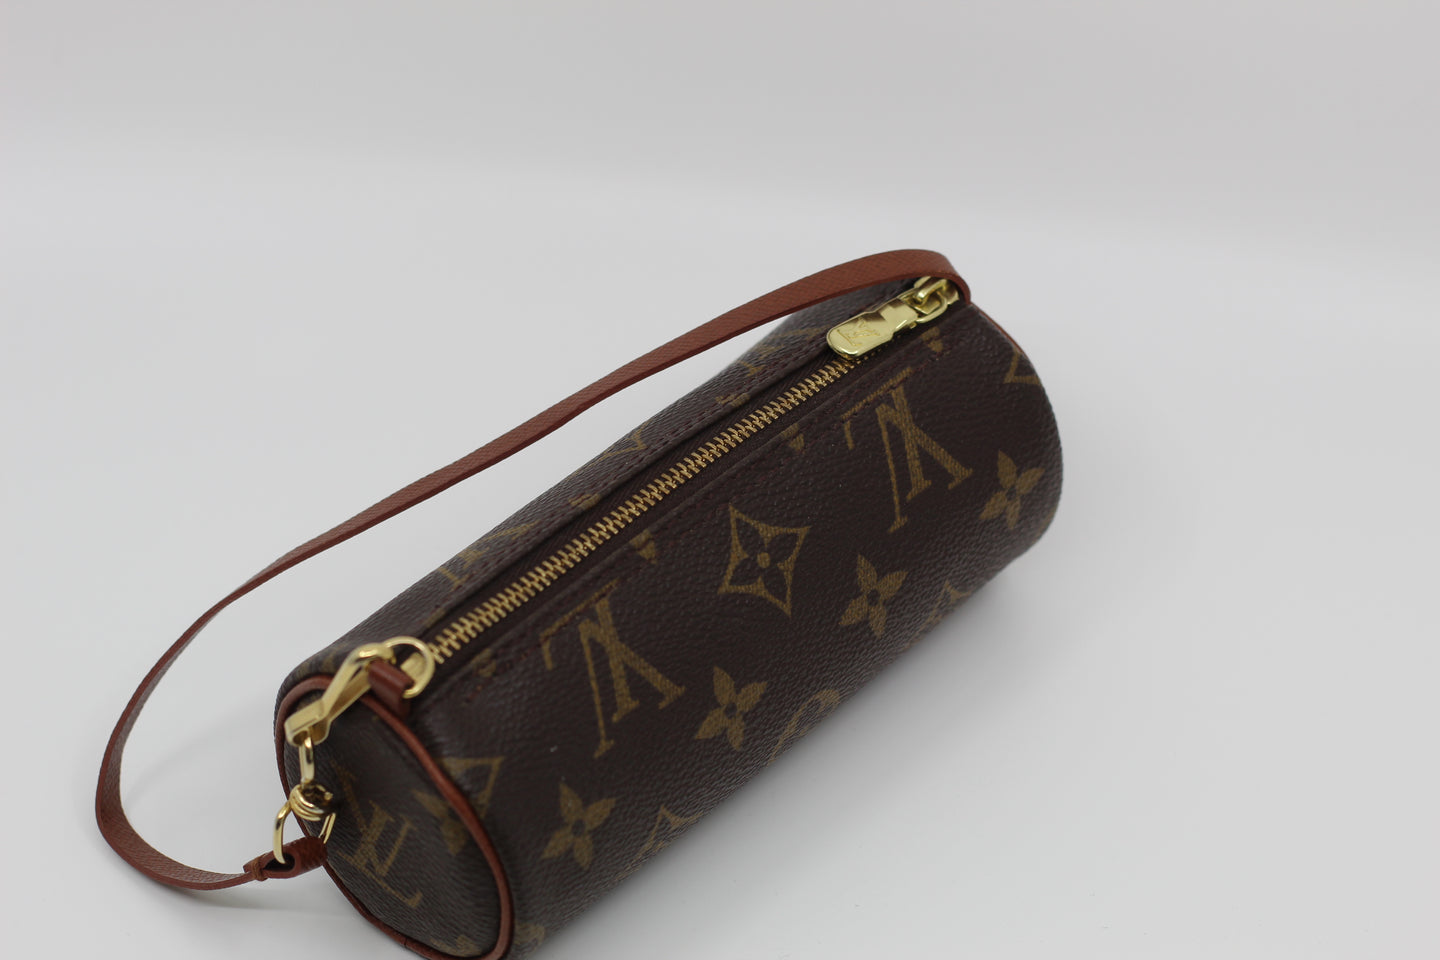 Louis Vuitton 2000s Pre-owned Papillon Bb Handbag